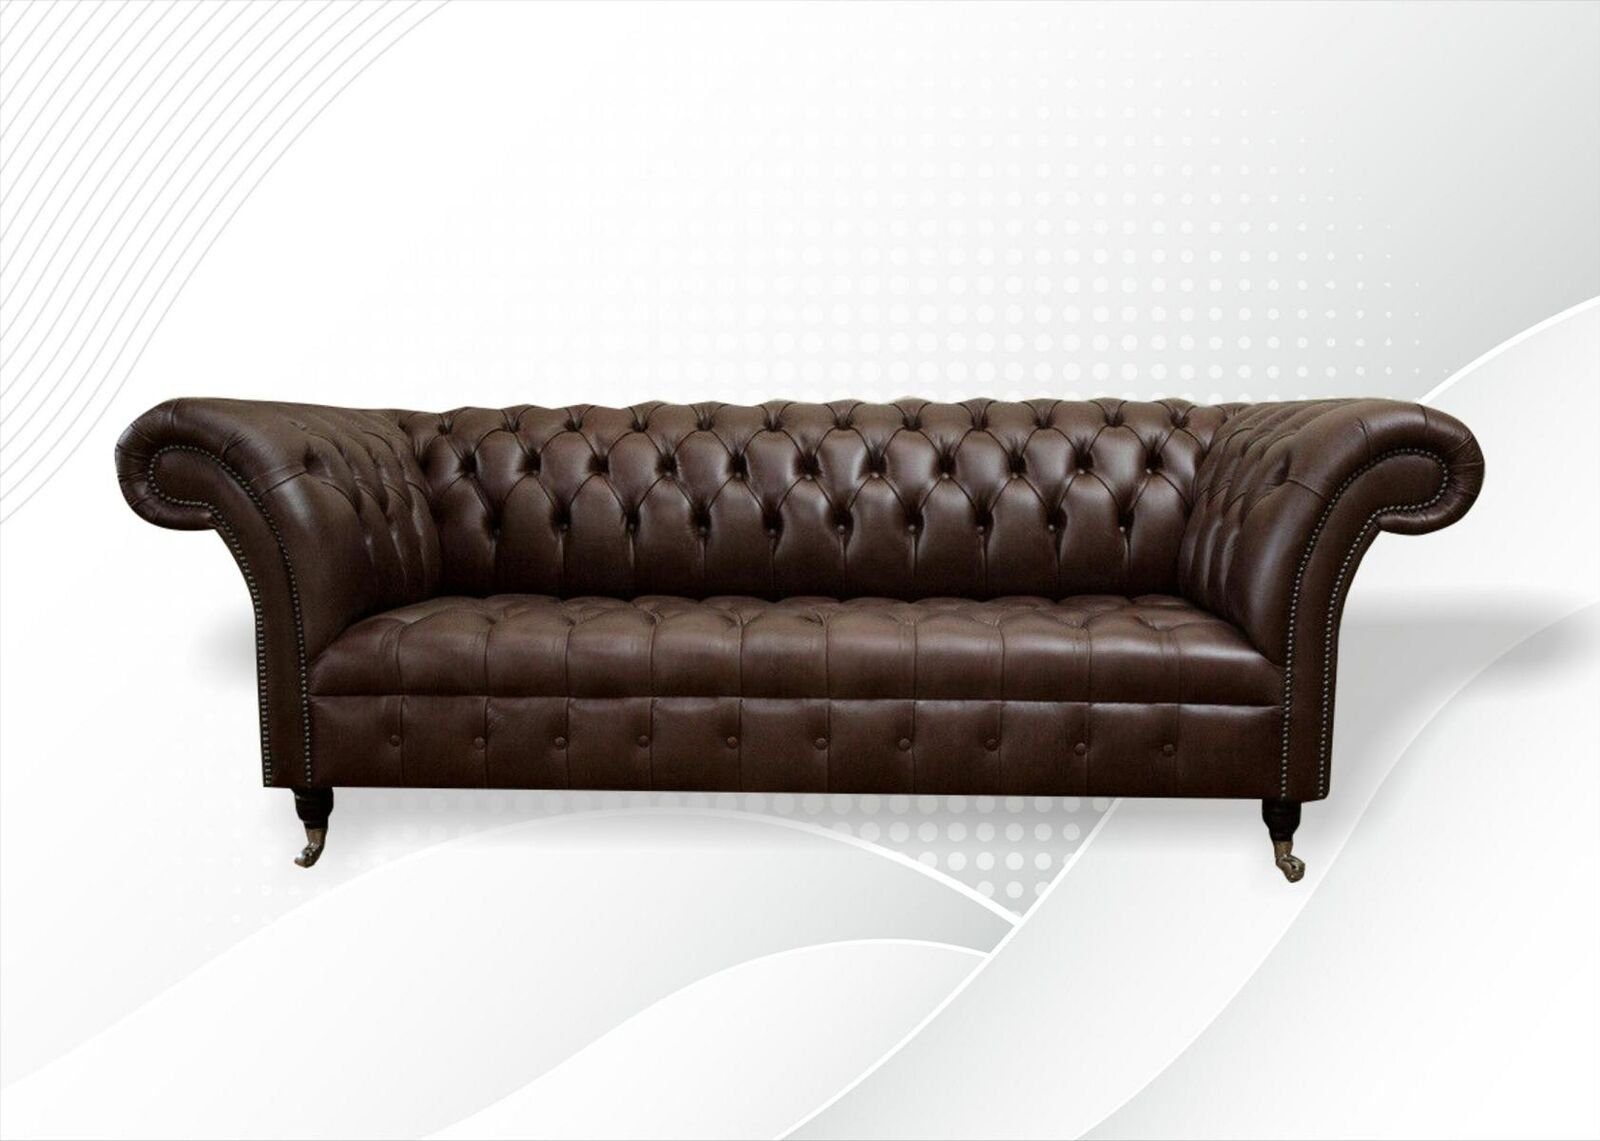 JVmoebel 3-Sitzer Chesterfield 3 Sitzer Leder Sofa Luxus Möbel 100% Leder Sofort